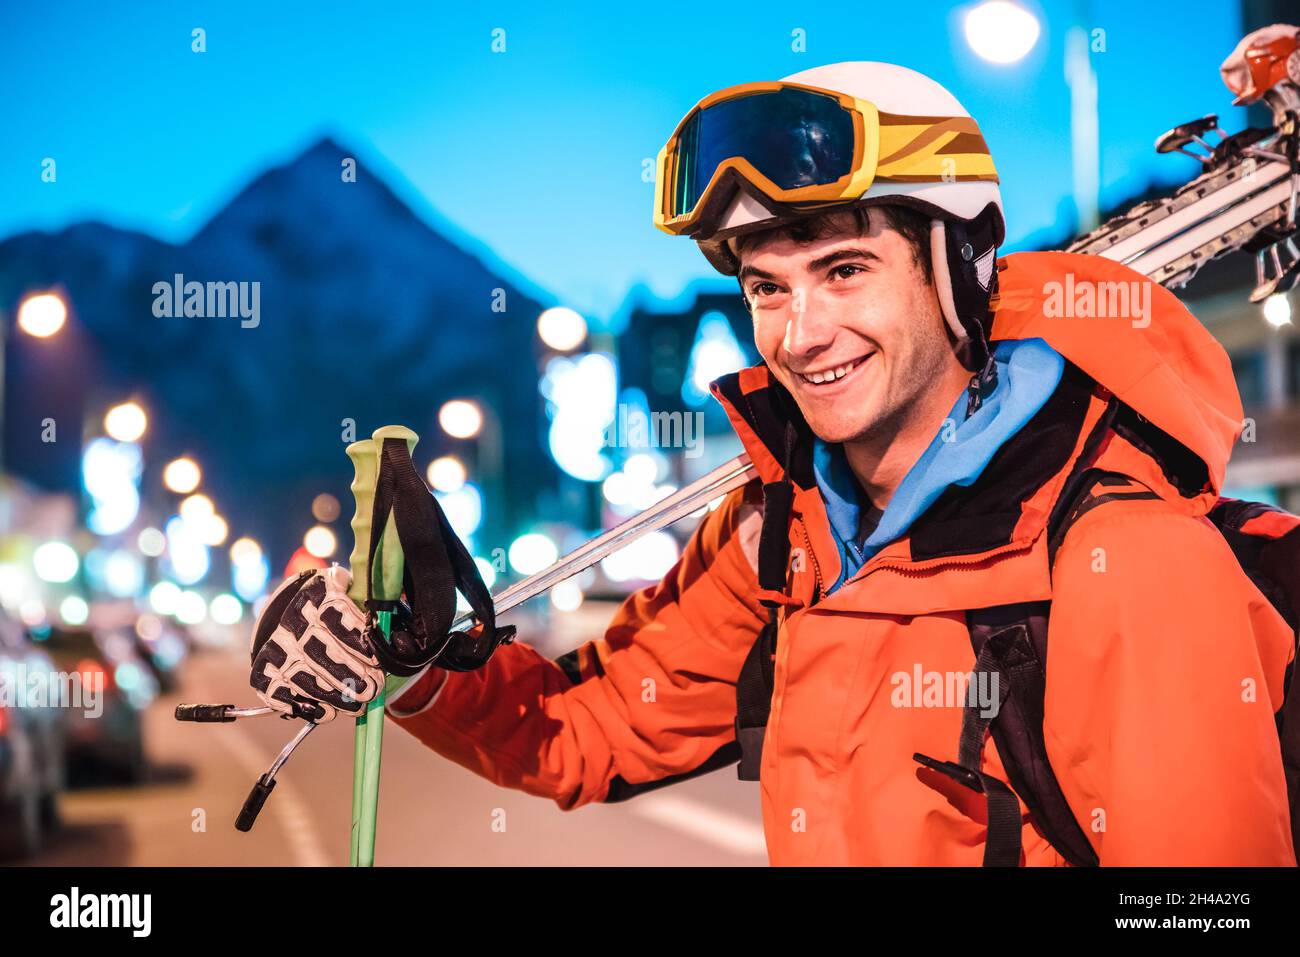 Profi-Skifahrer zur Blauen Stunde nach dem Trainingstag im skigebiet der französischen alpen - Wintersport-Konzept mit entspanntem Kerl auf dem Gipfel des Berges Stockfoto